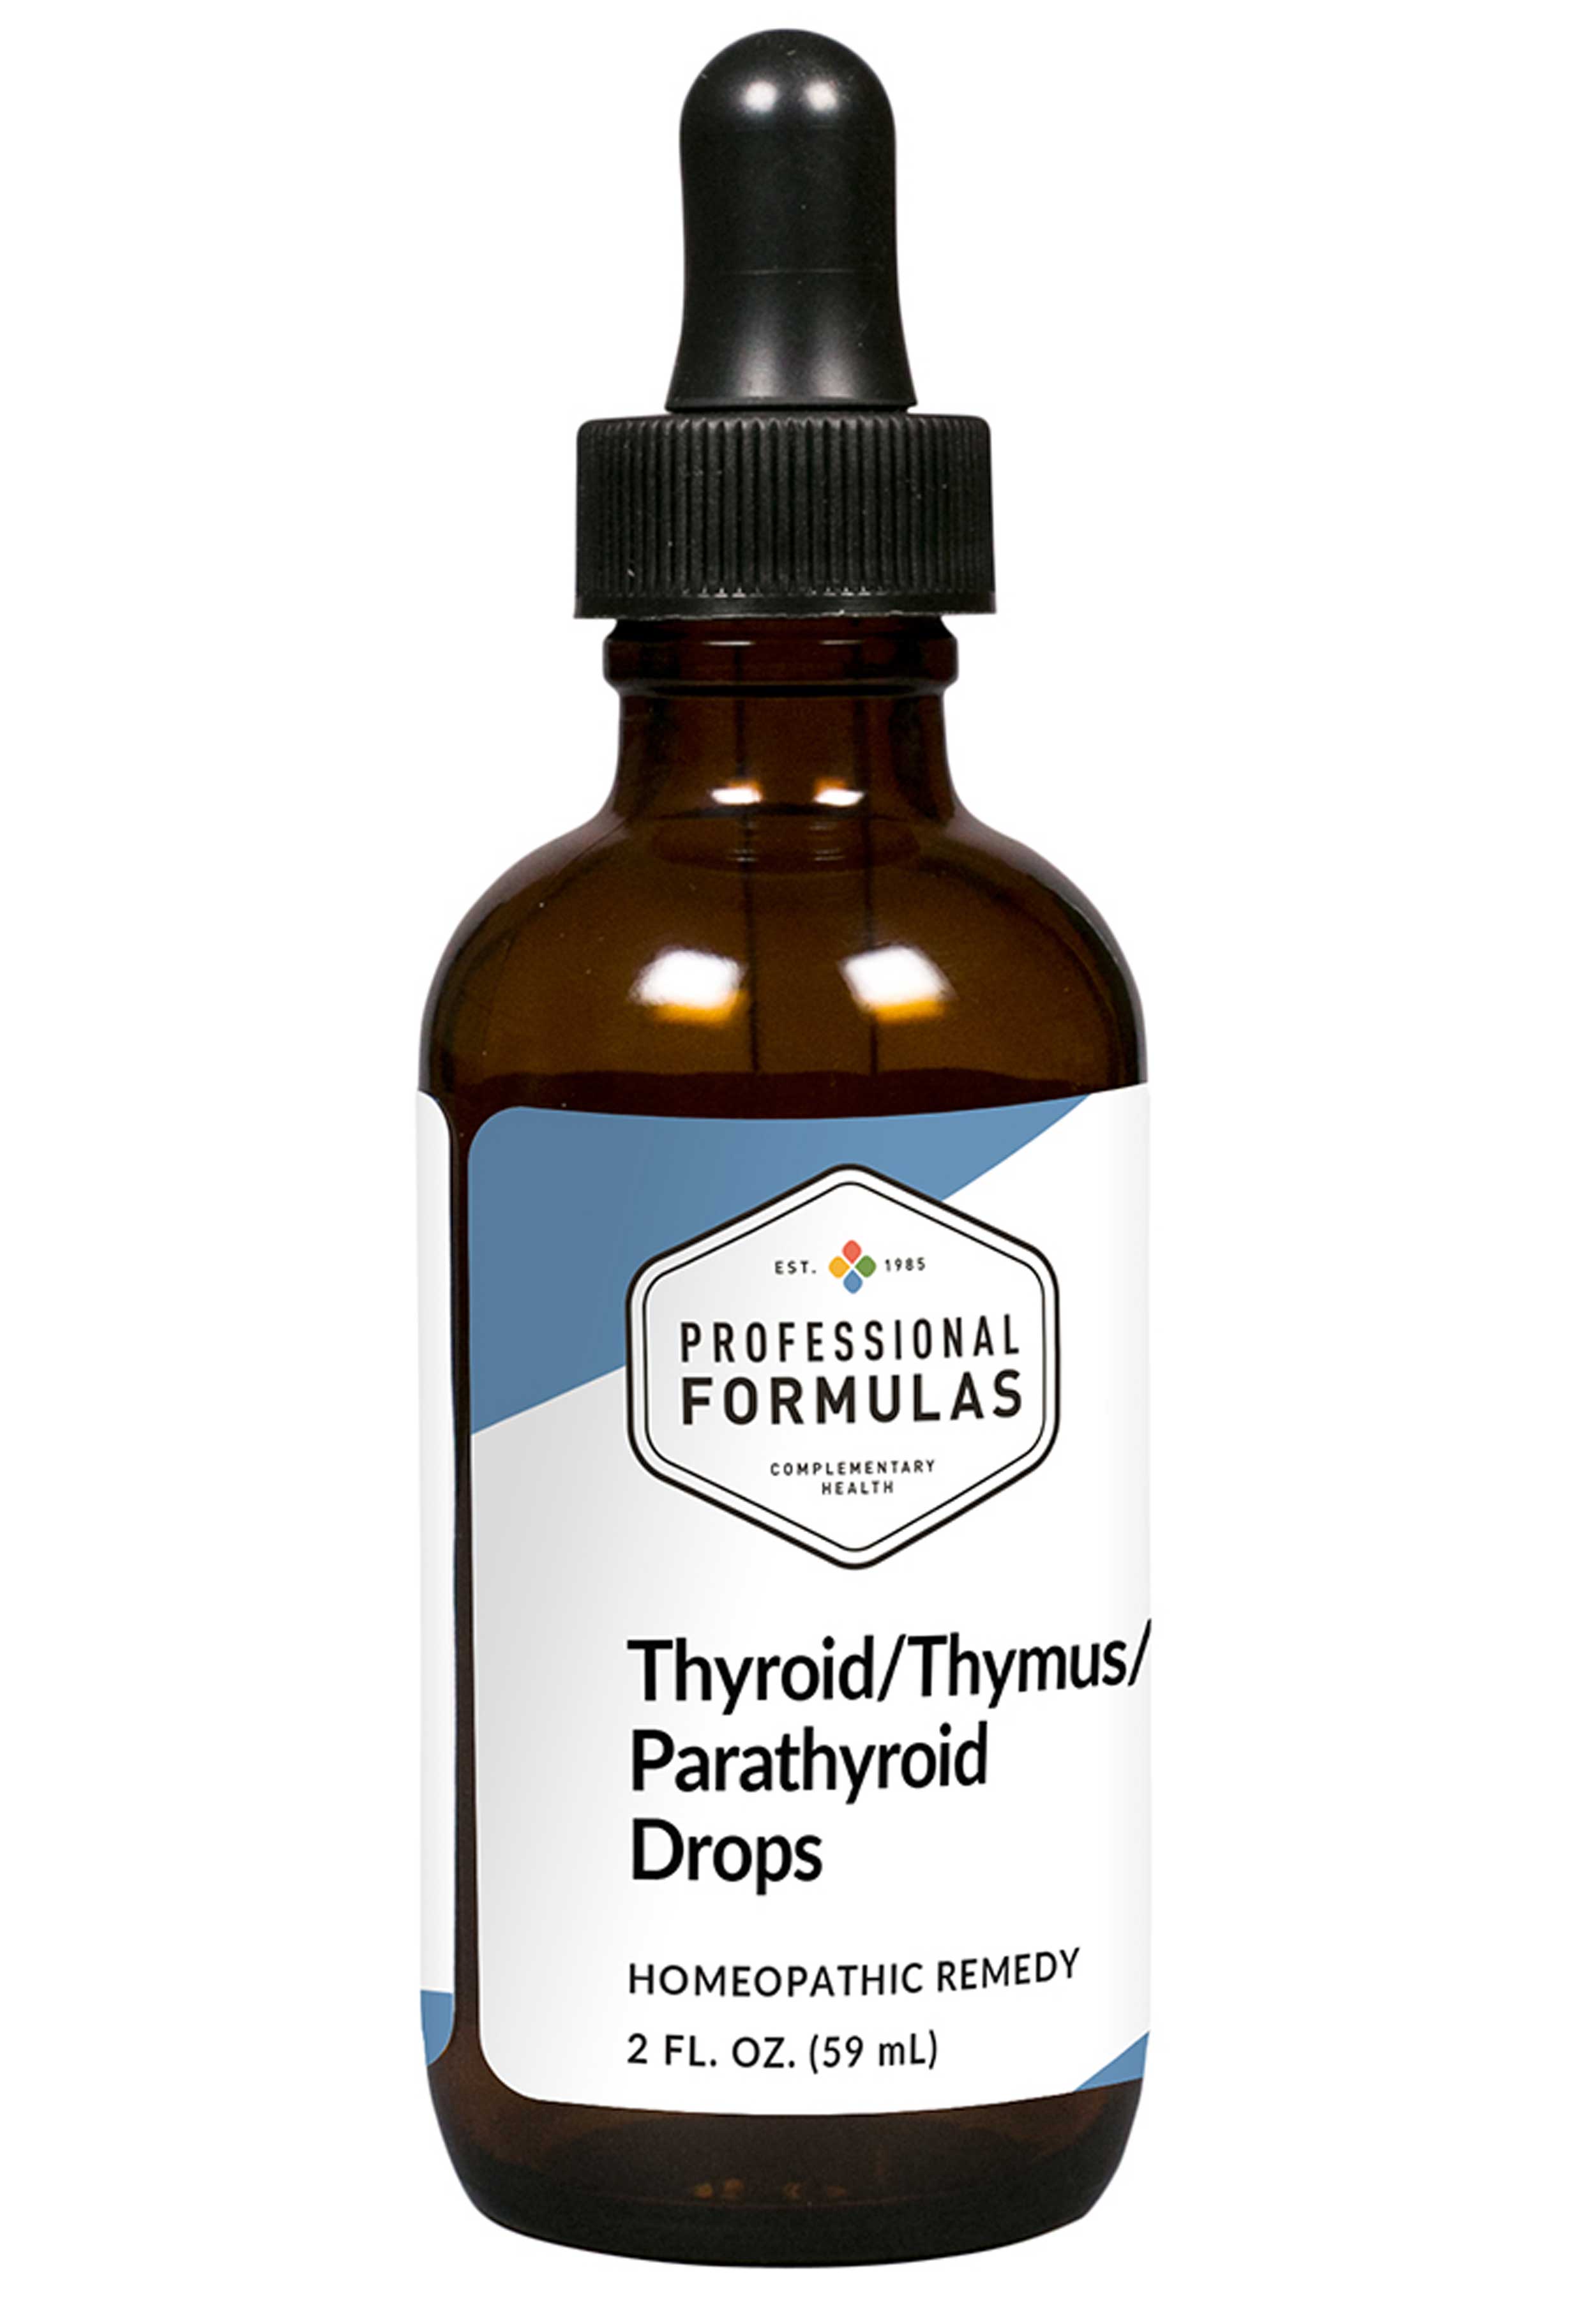 Professional Formulas Thyroid Thymus Parathyroid Drops